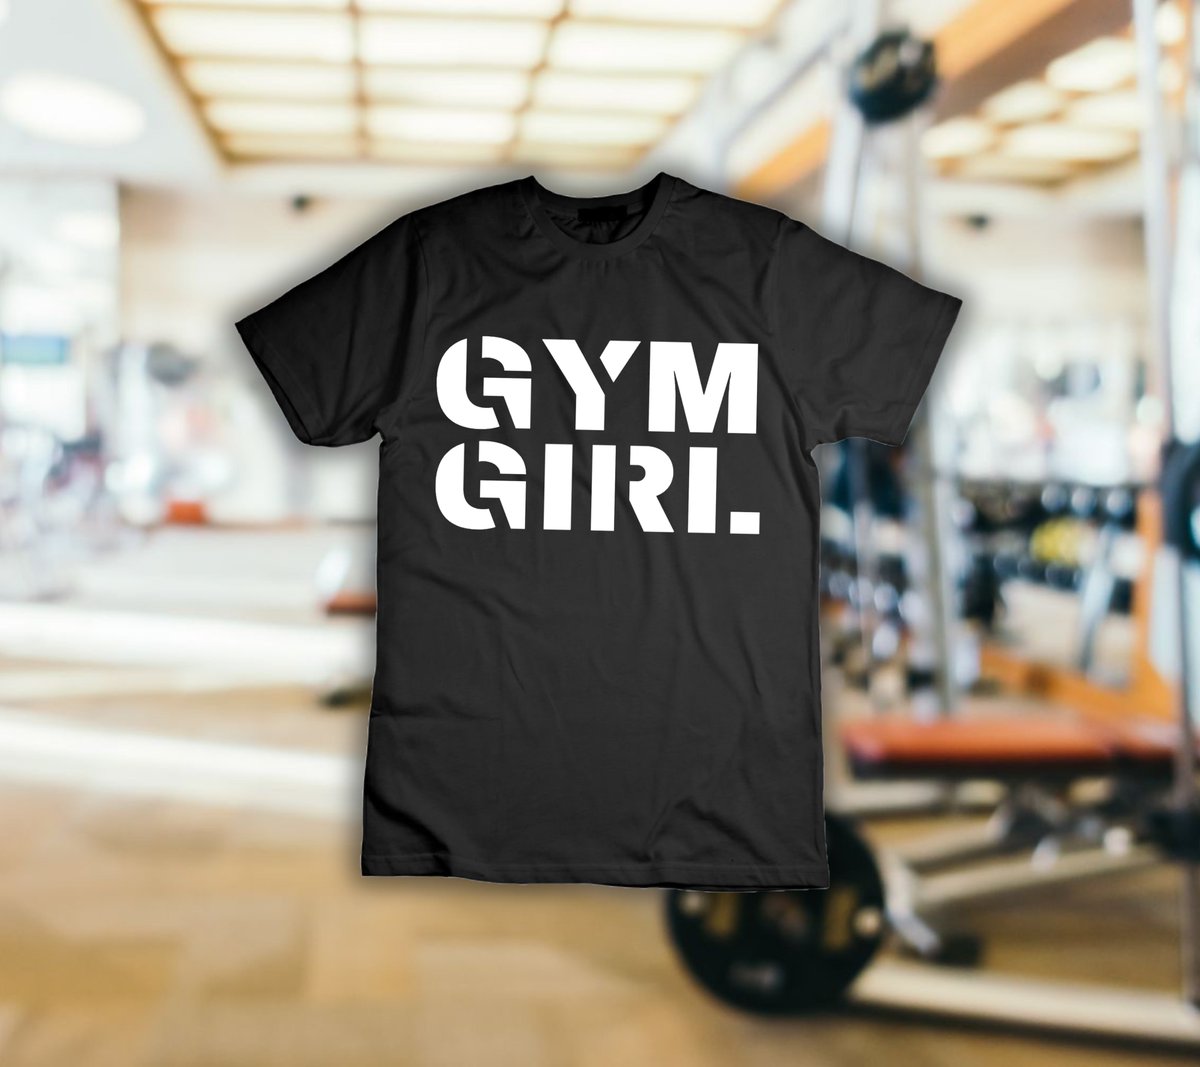 #gymgirl #Gymbro #gymnastics #gym #gymlife #gymbros #gymnast #fitness #fitnessgirl #fitgirl #fitnessgirls #fitnesslifestyle 
GET YOURS IMMEDIATELY👉👉👉teepublic.com/t-shirt/594282…